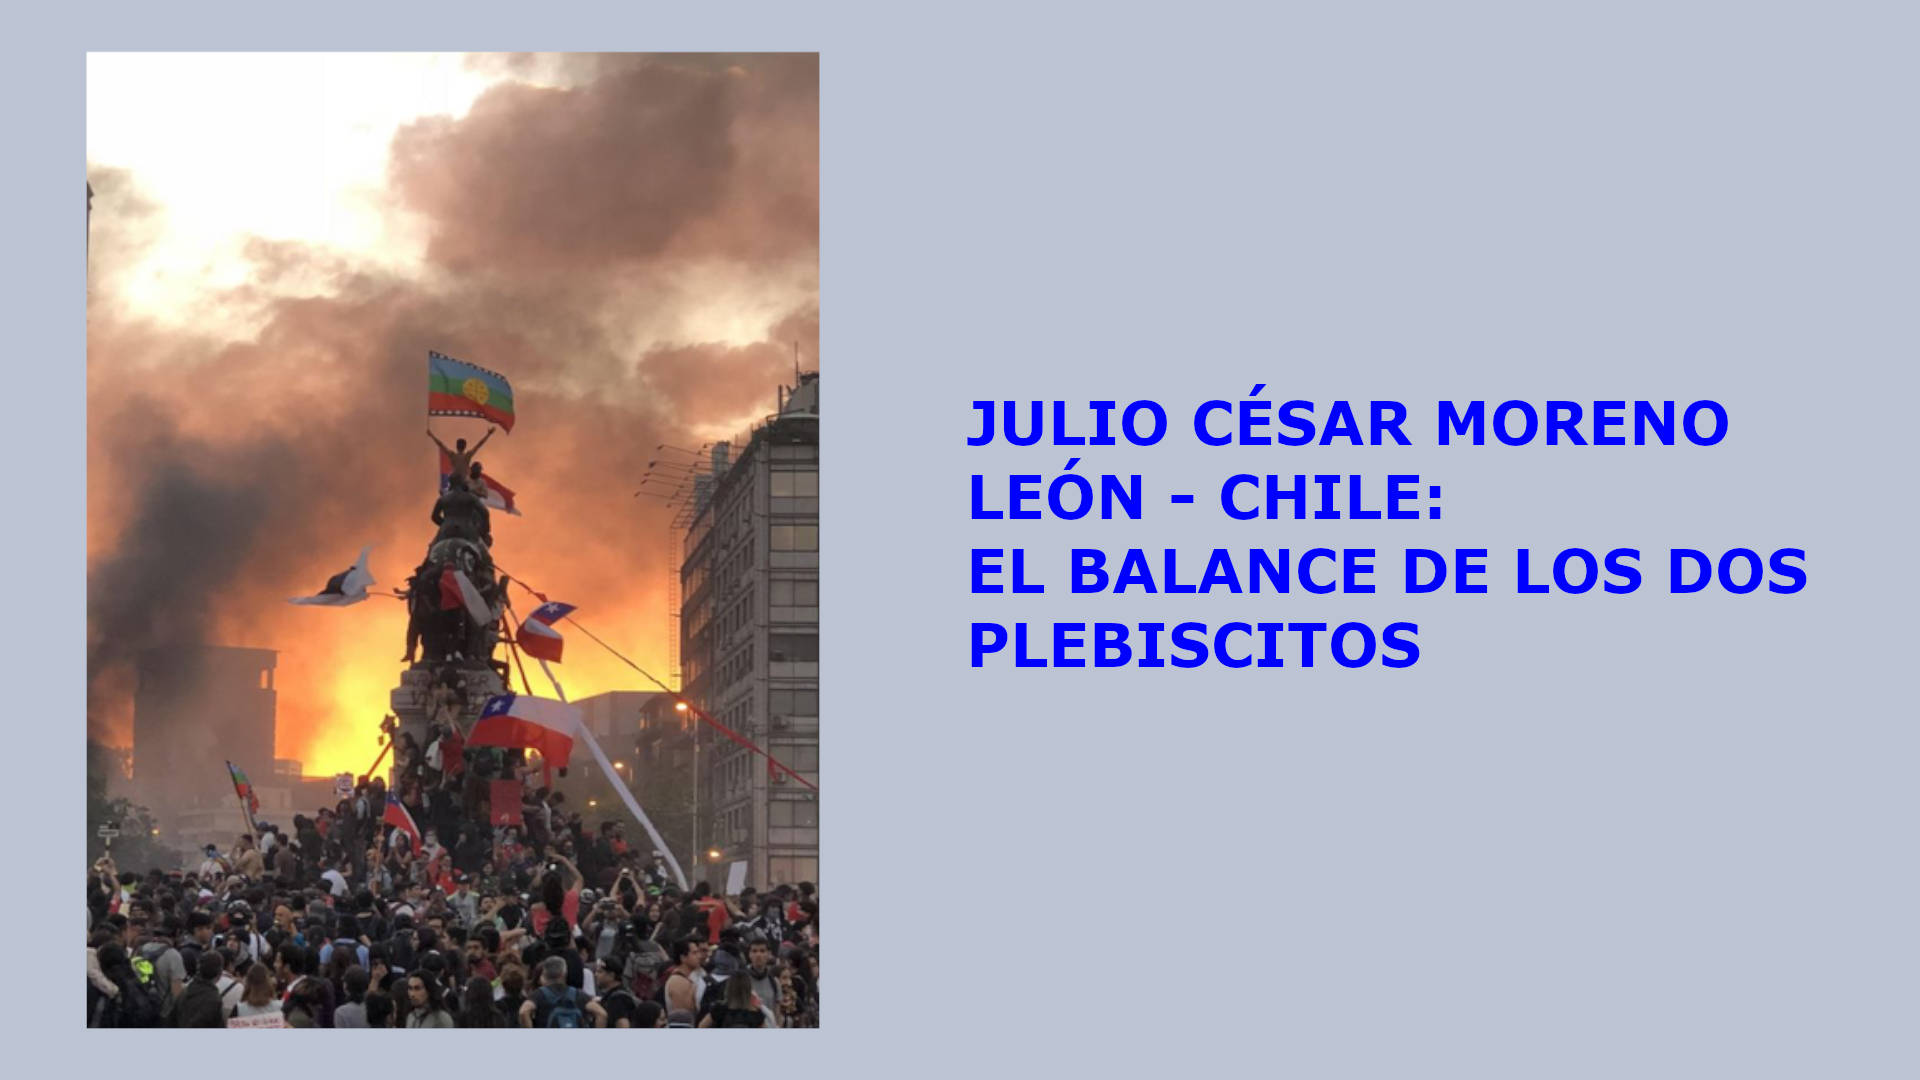 JULIO CÉSAR MORENO LEÓN - CHILE